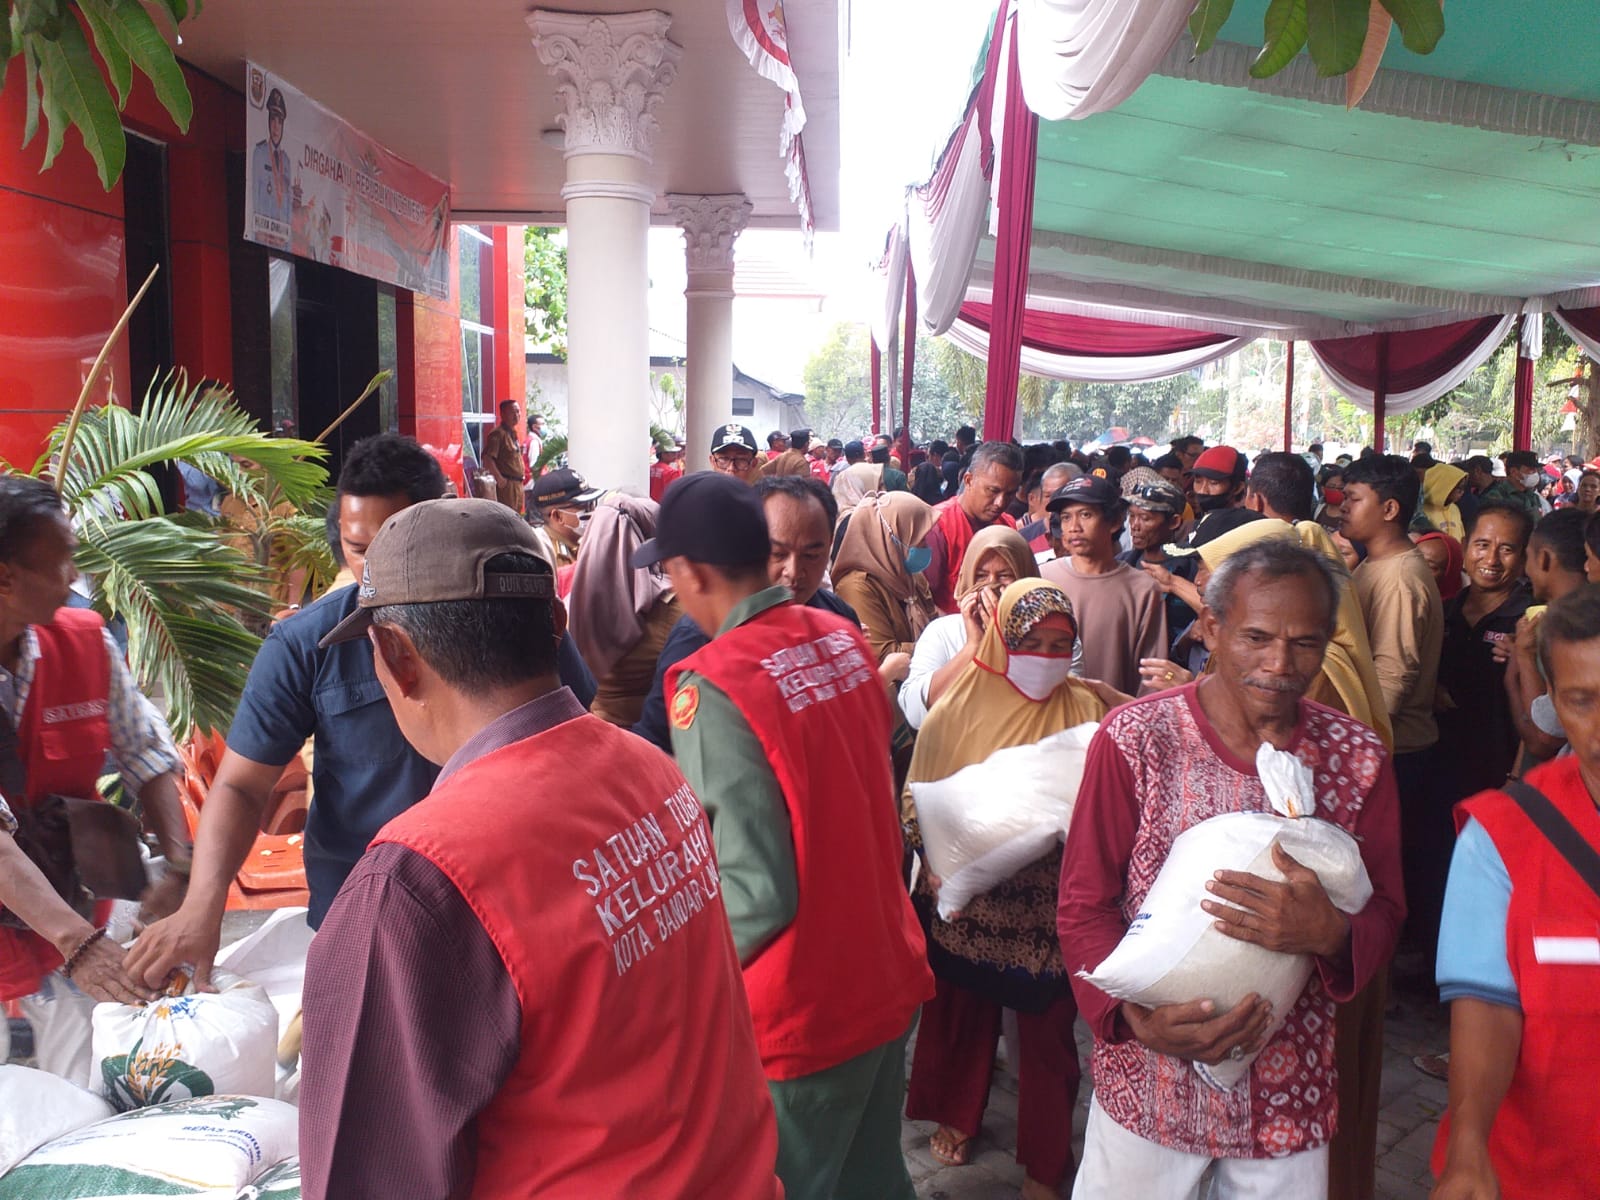 Siap-siap Bun, Besok Pemkot Bandar Lampung Gelar Pasar Murah, Cek Lokasinya Sekarang Juga